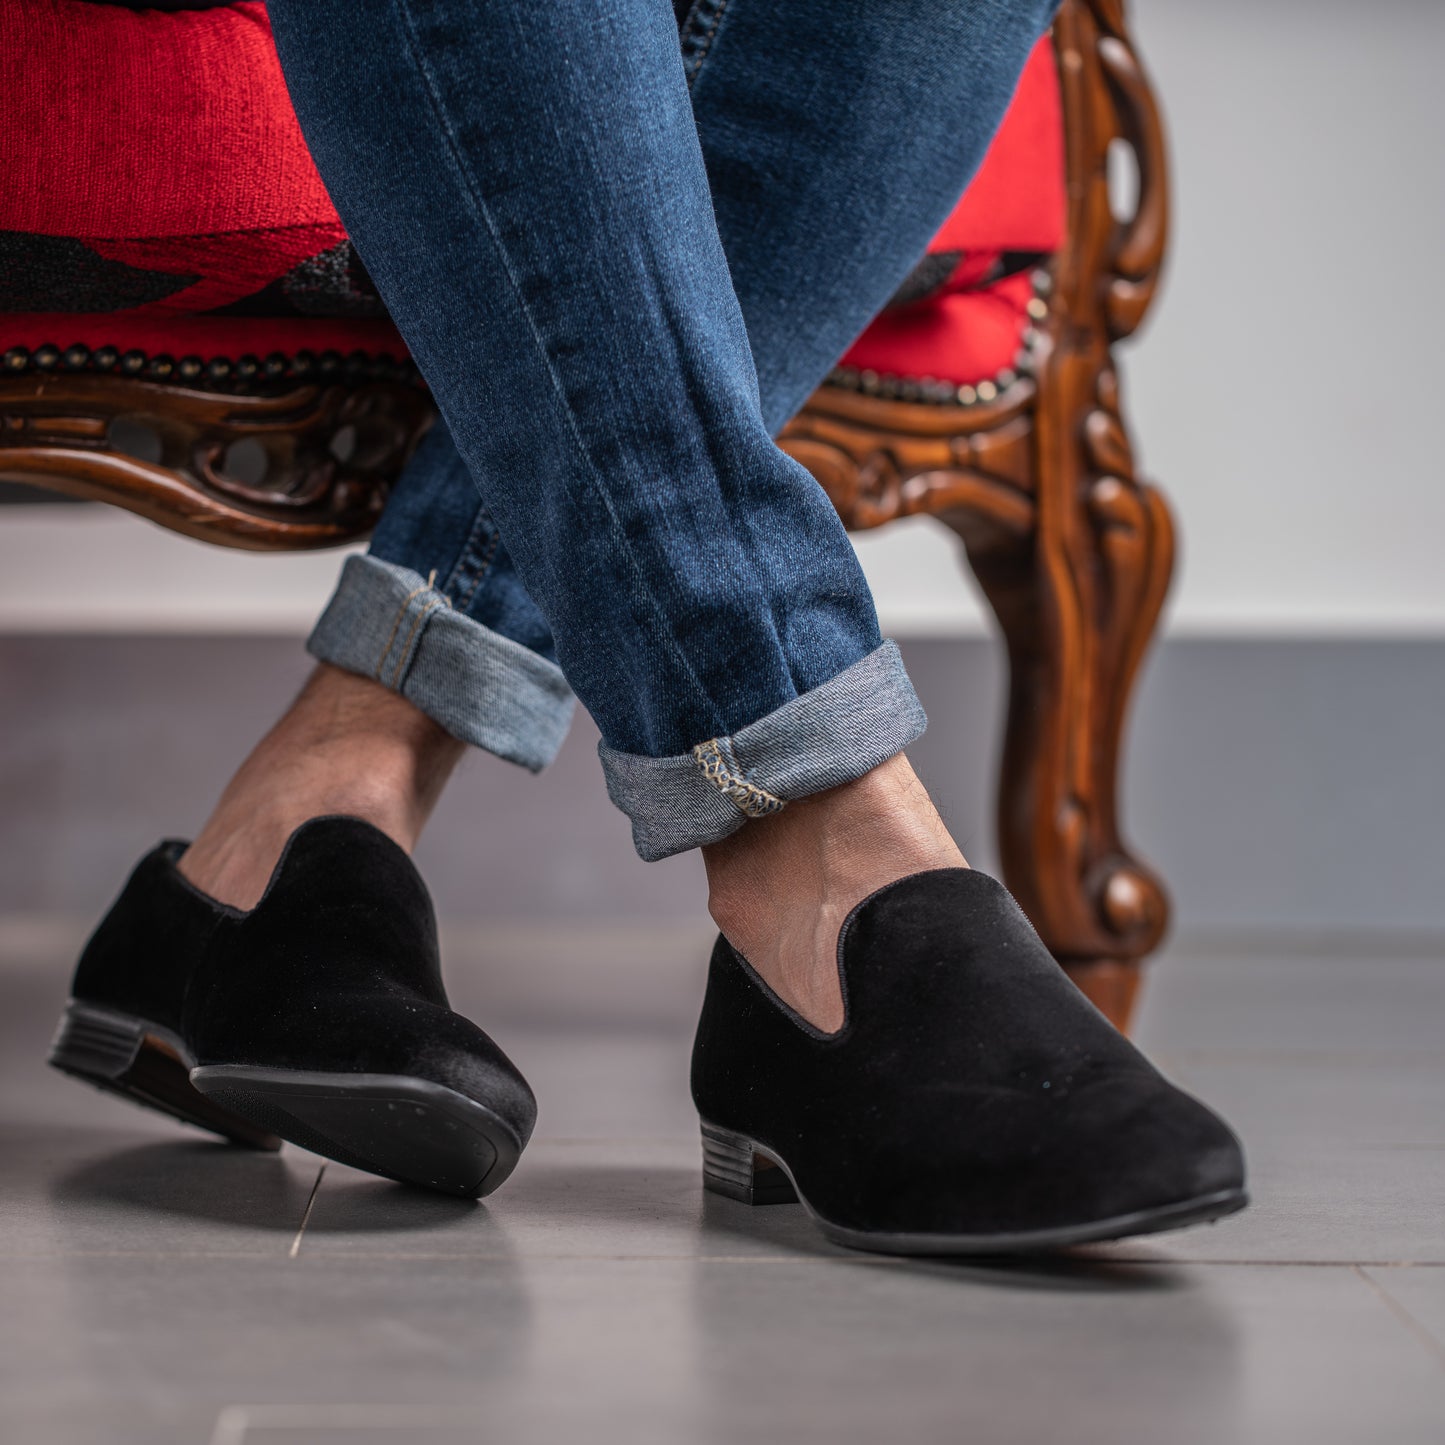 Model wearing Men's Black velvet loafer smoking slipper